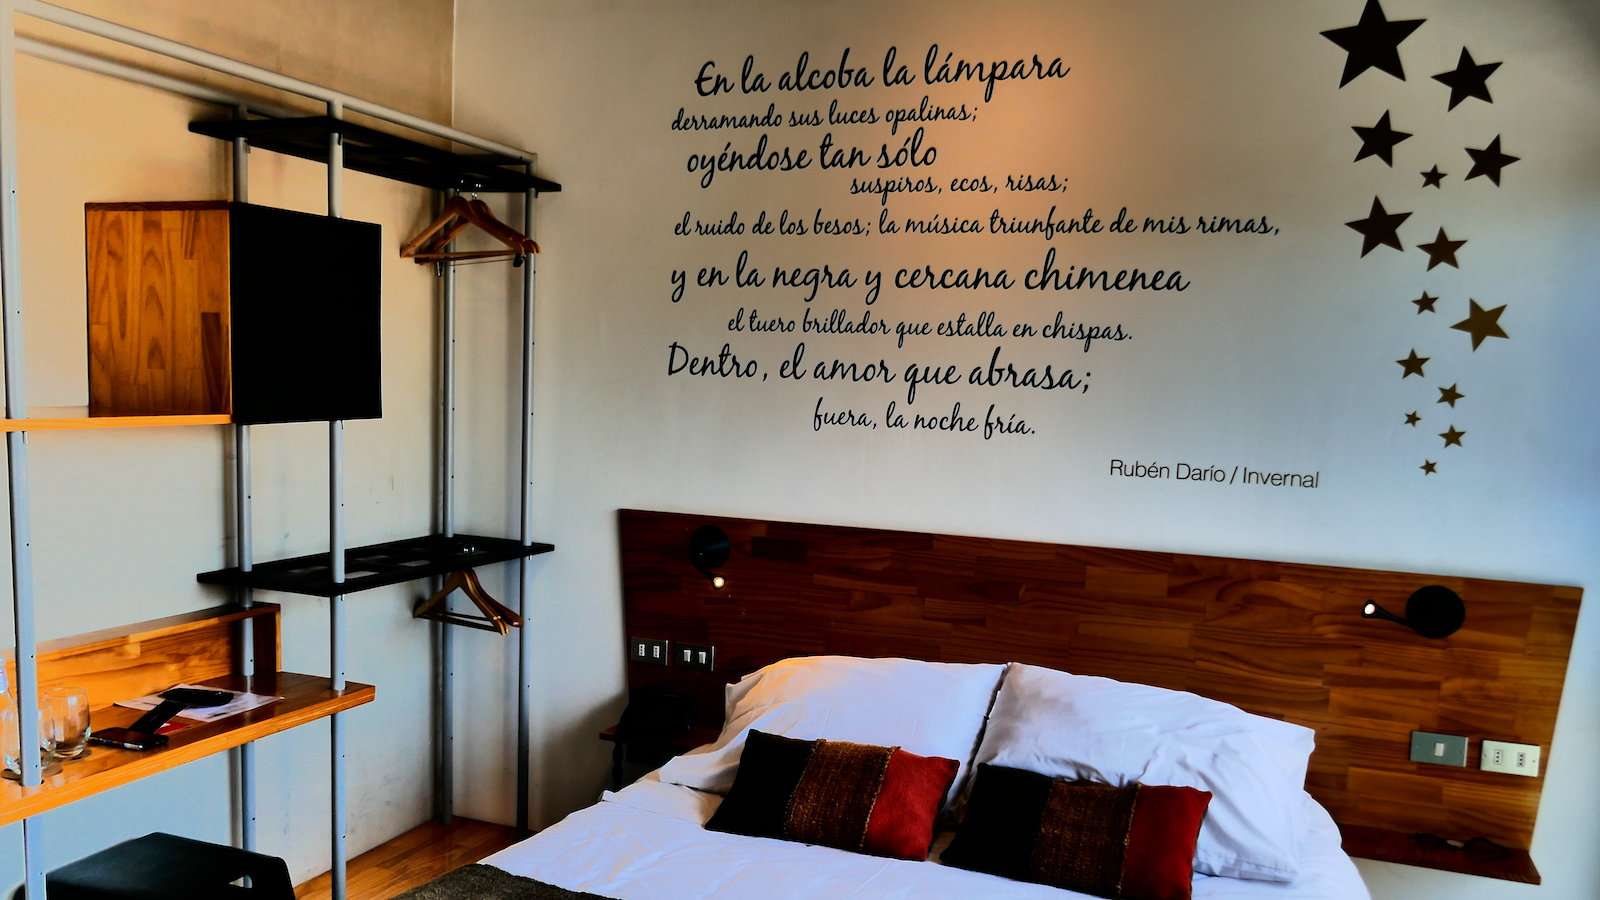 O Verso Hotel é um local gay friendly em Valparaiso, Chile, que abraça a arte em todos os sentidos